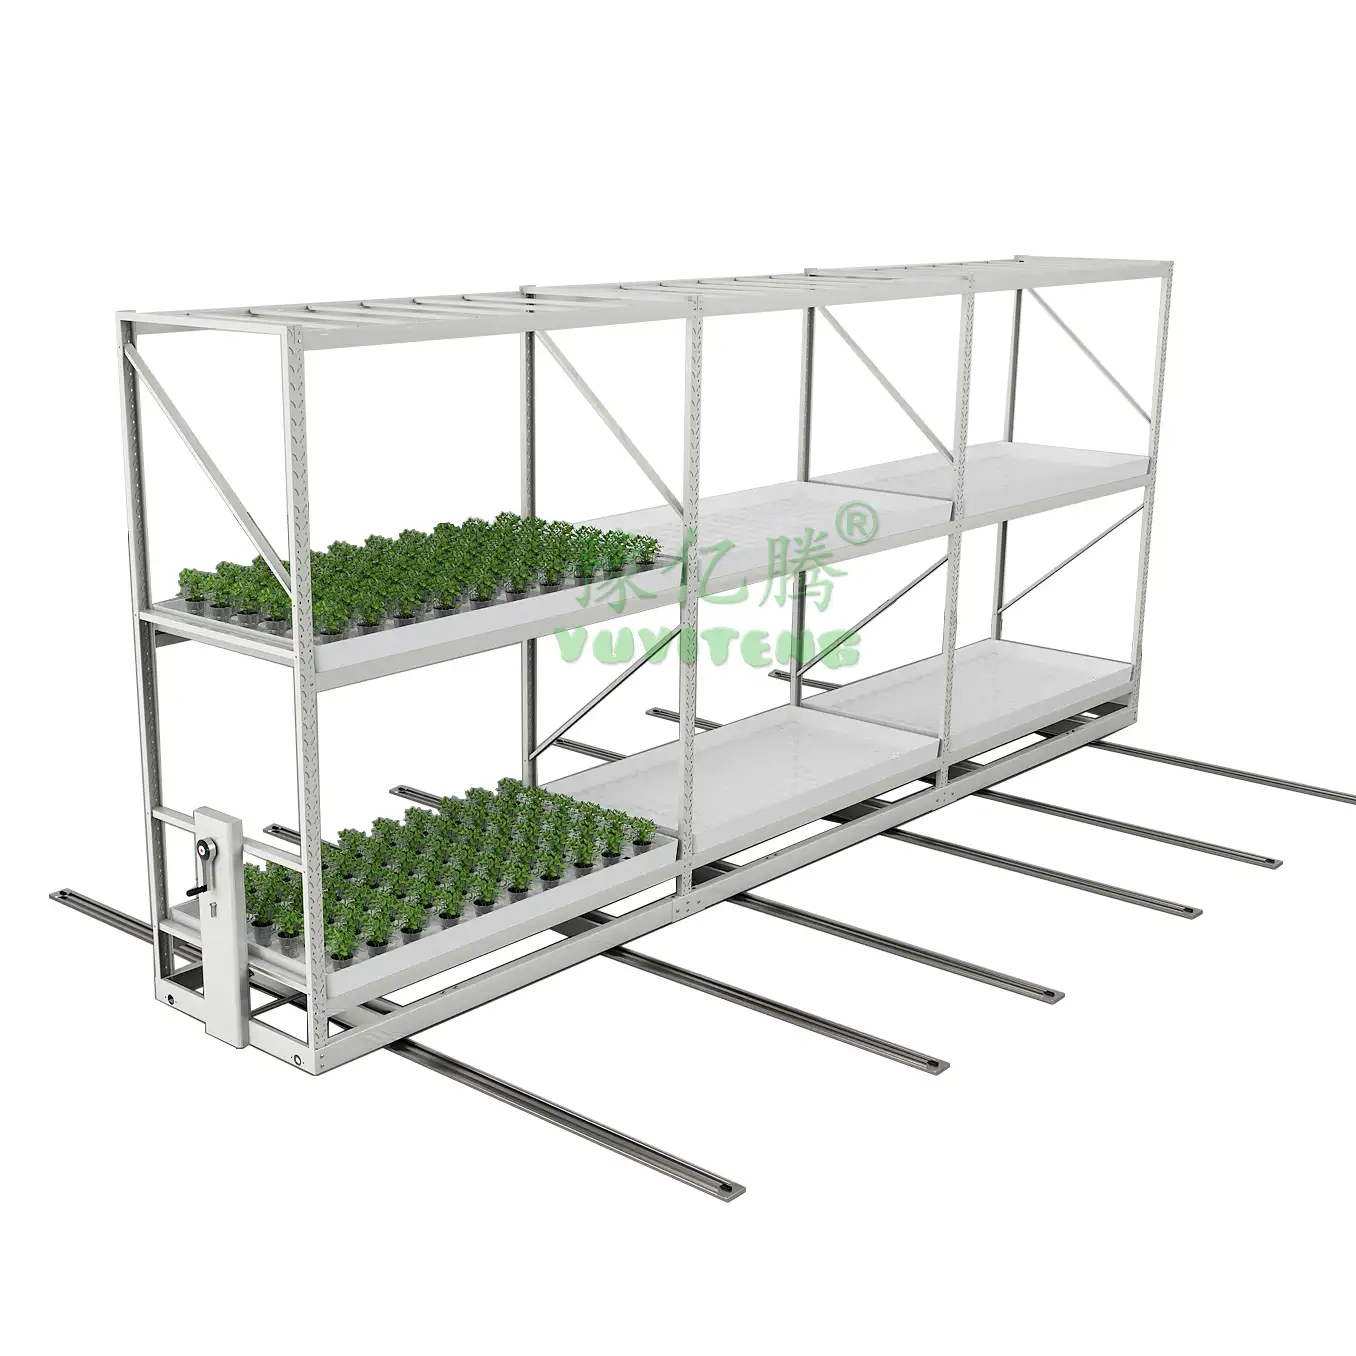 Microgreen verticale idroponica indoor mobile coltiva la cremagliera